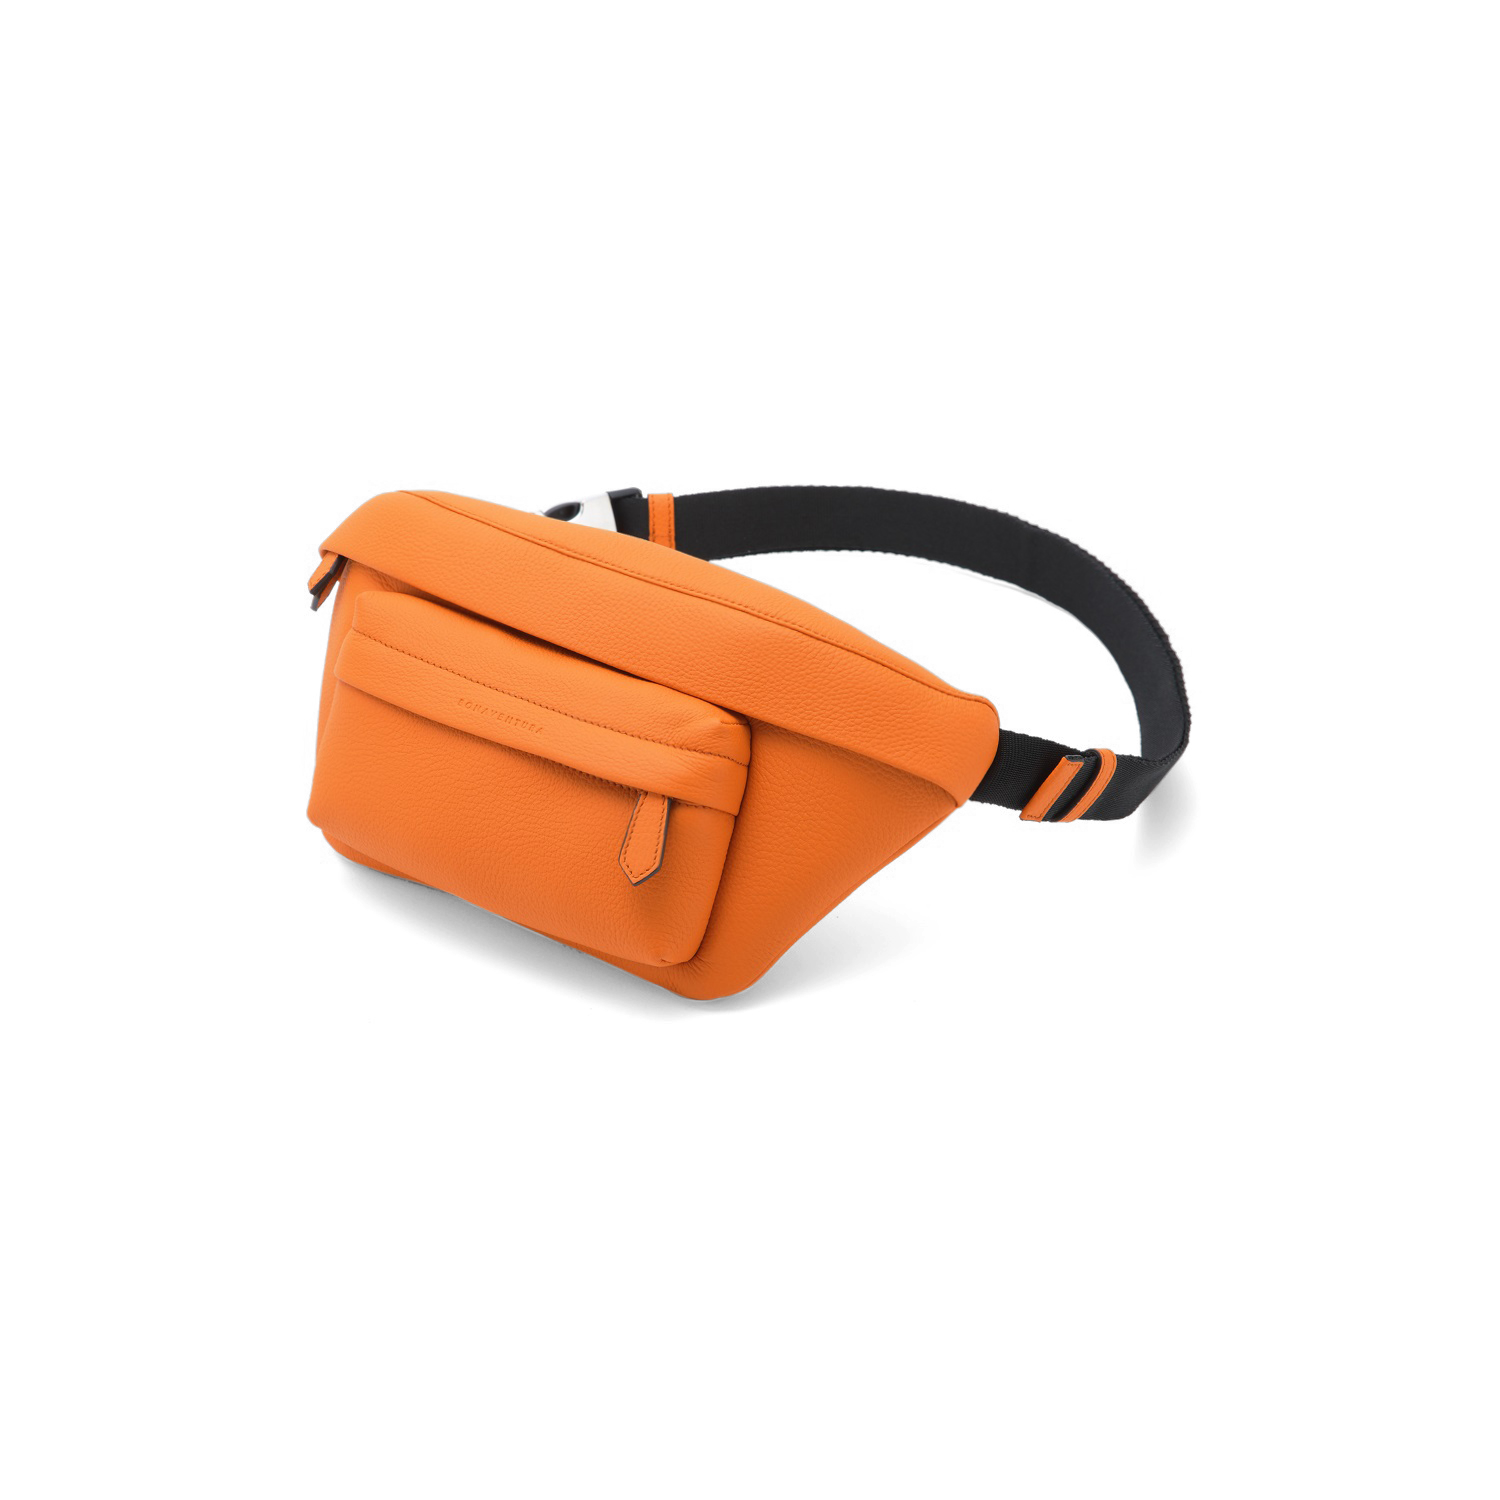 Η ευέλικτη τσάντα Luca Fjord Crossbody Bag της BONAVENTURA ως καλοκαιρινό highlight στο πορτοκαλί χρώμα.